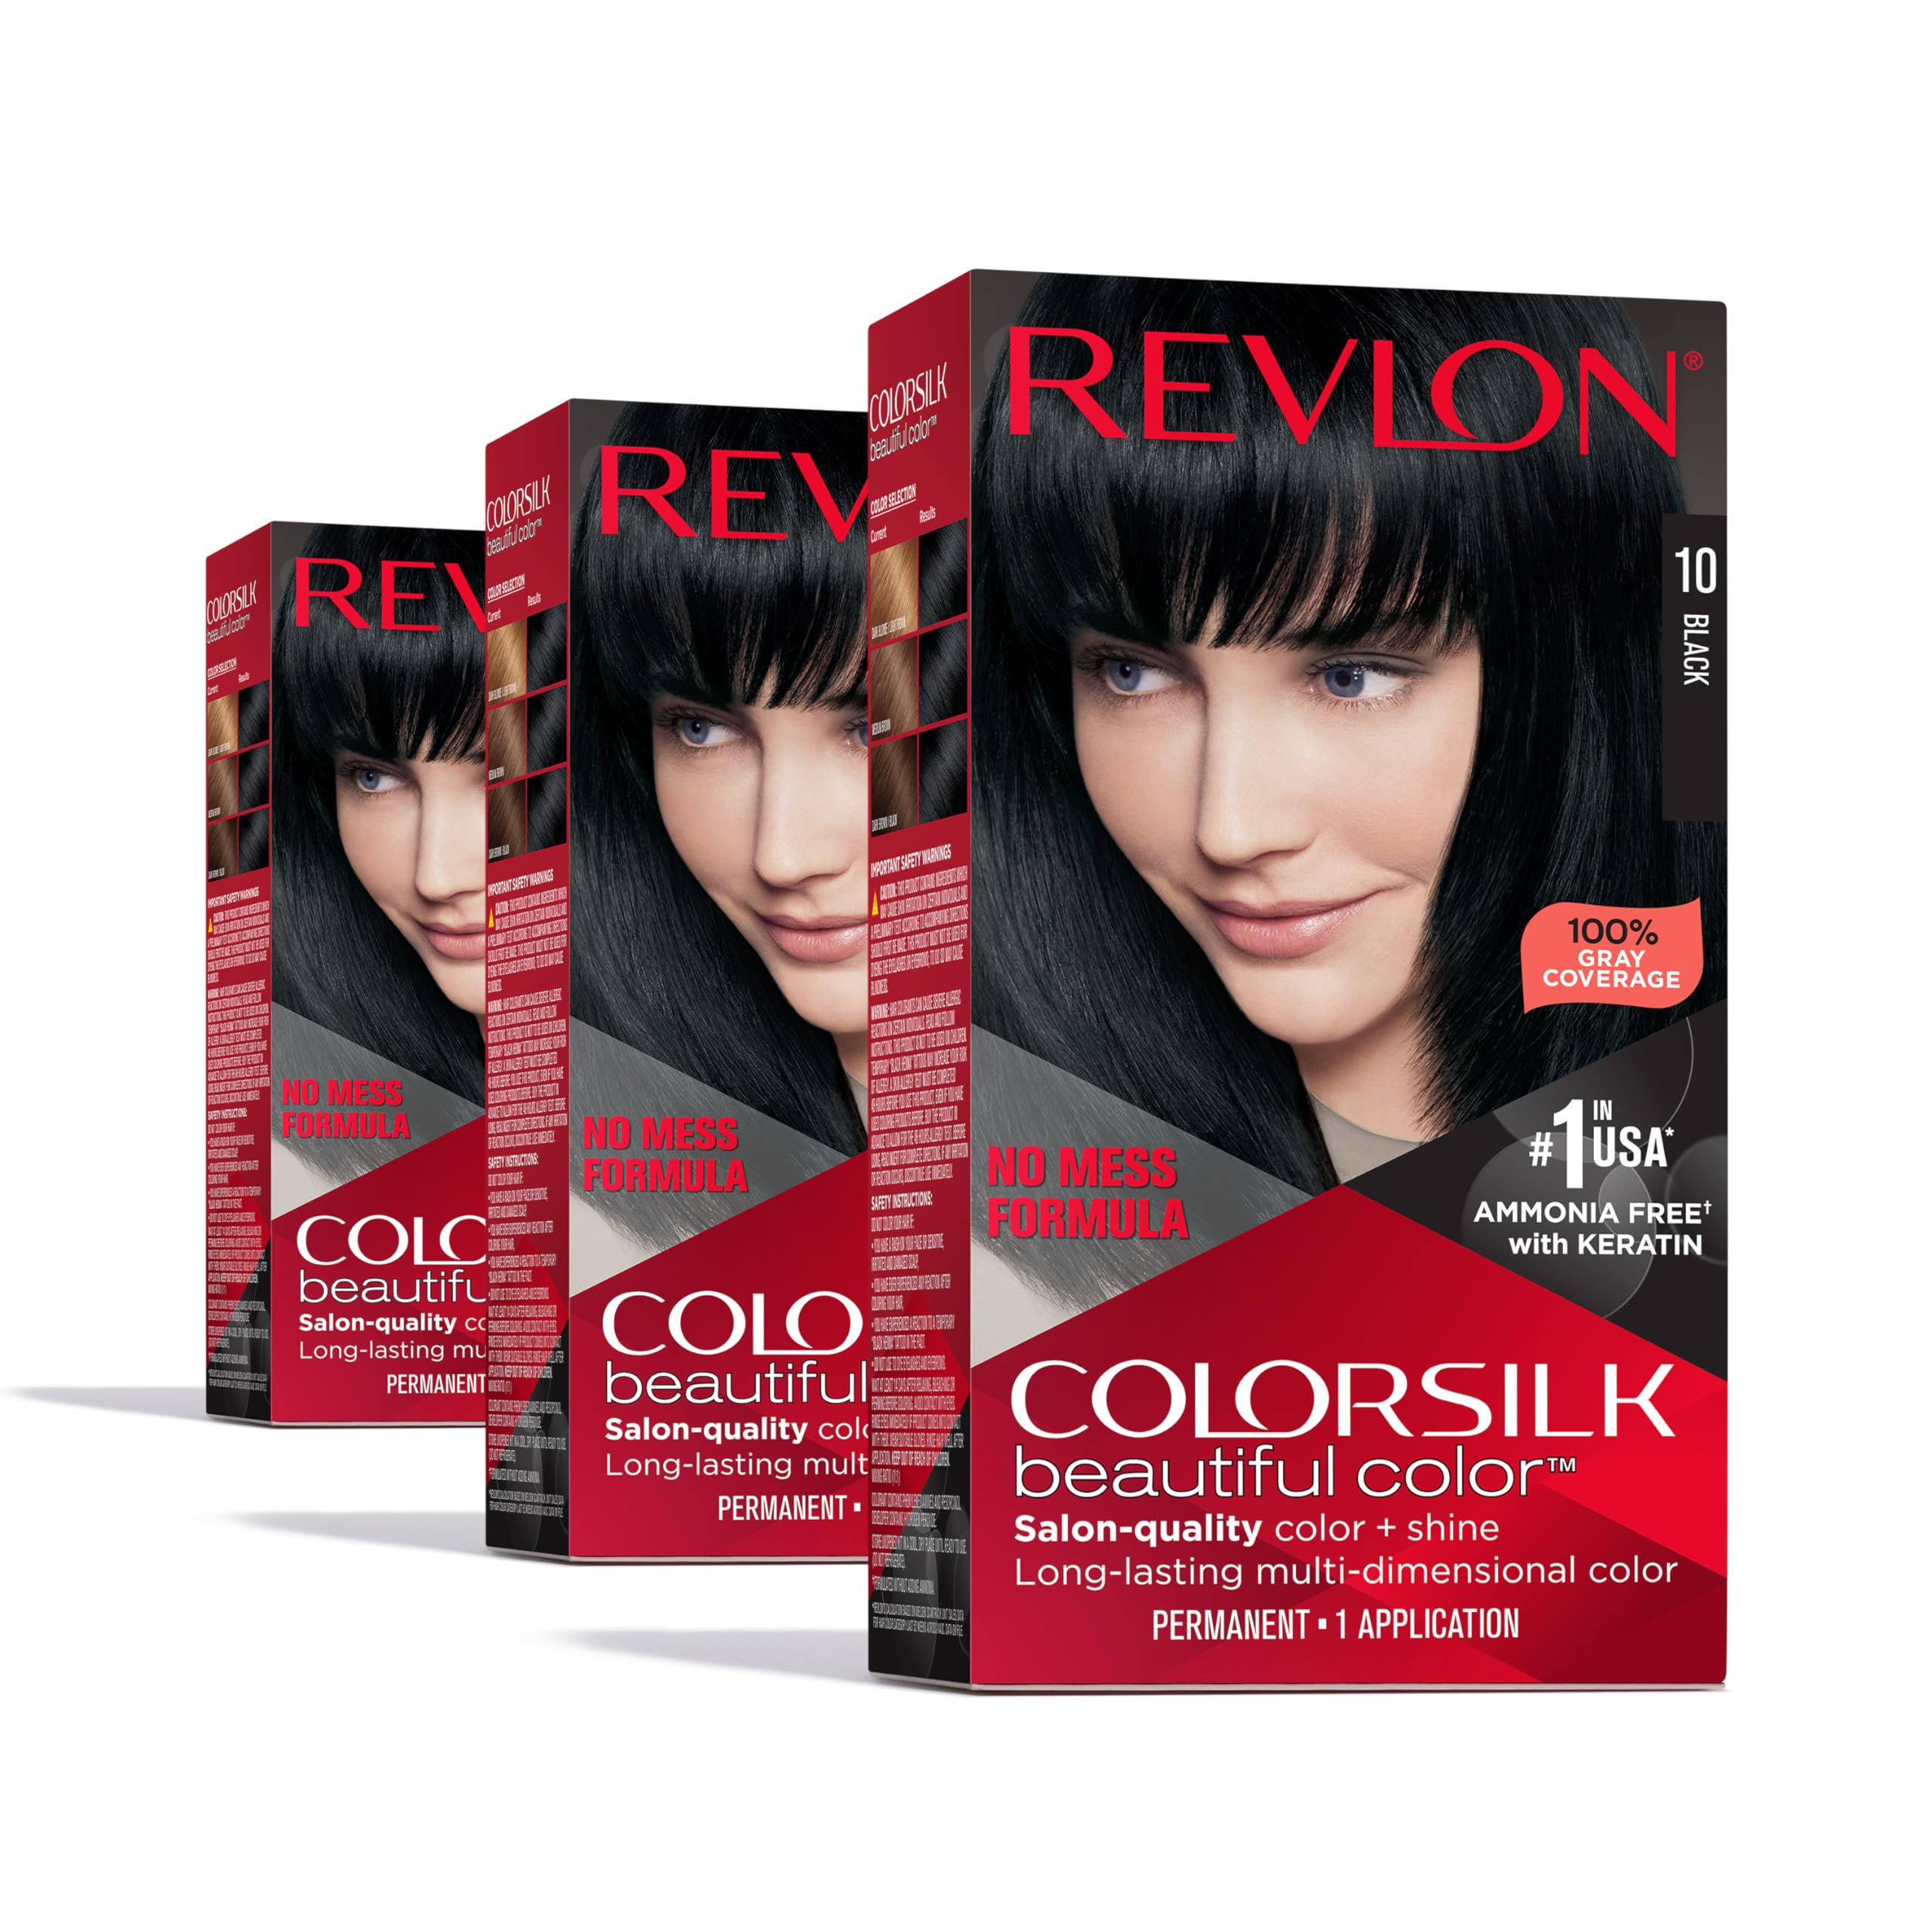 $6.28 w/ S&S: Revlon ColorSilk Beautiful Color Permanent Hair Color, 10 Black, 3 Pack